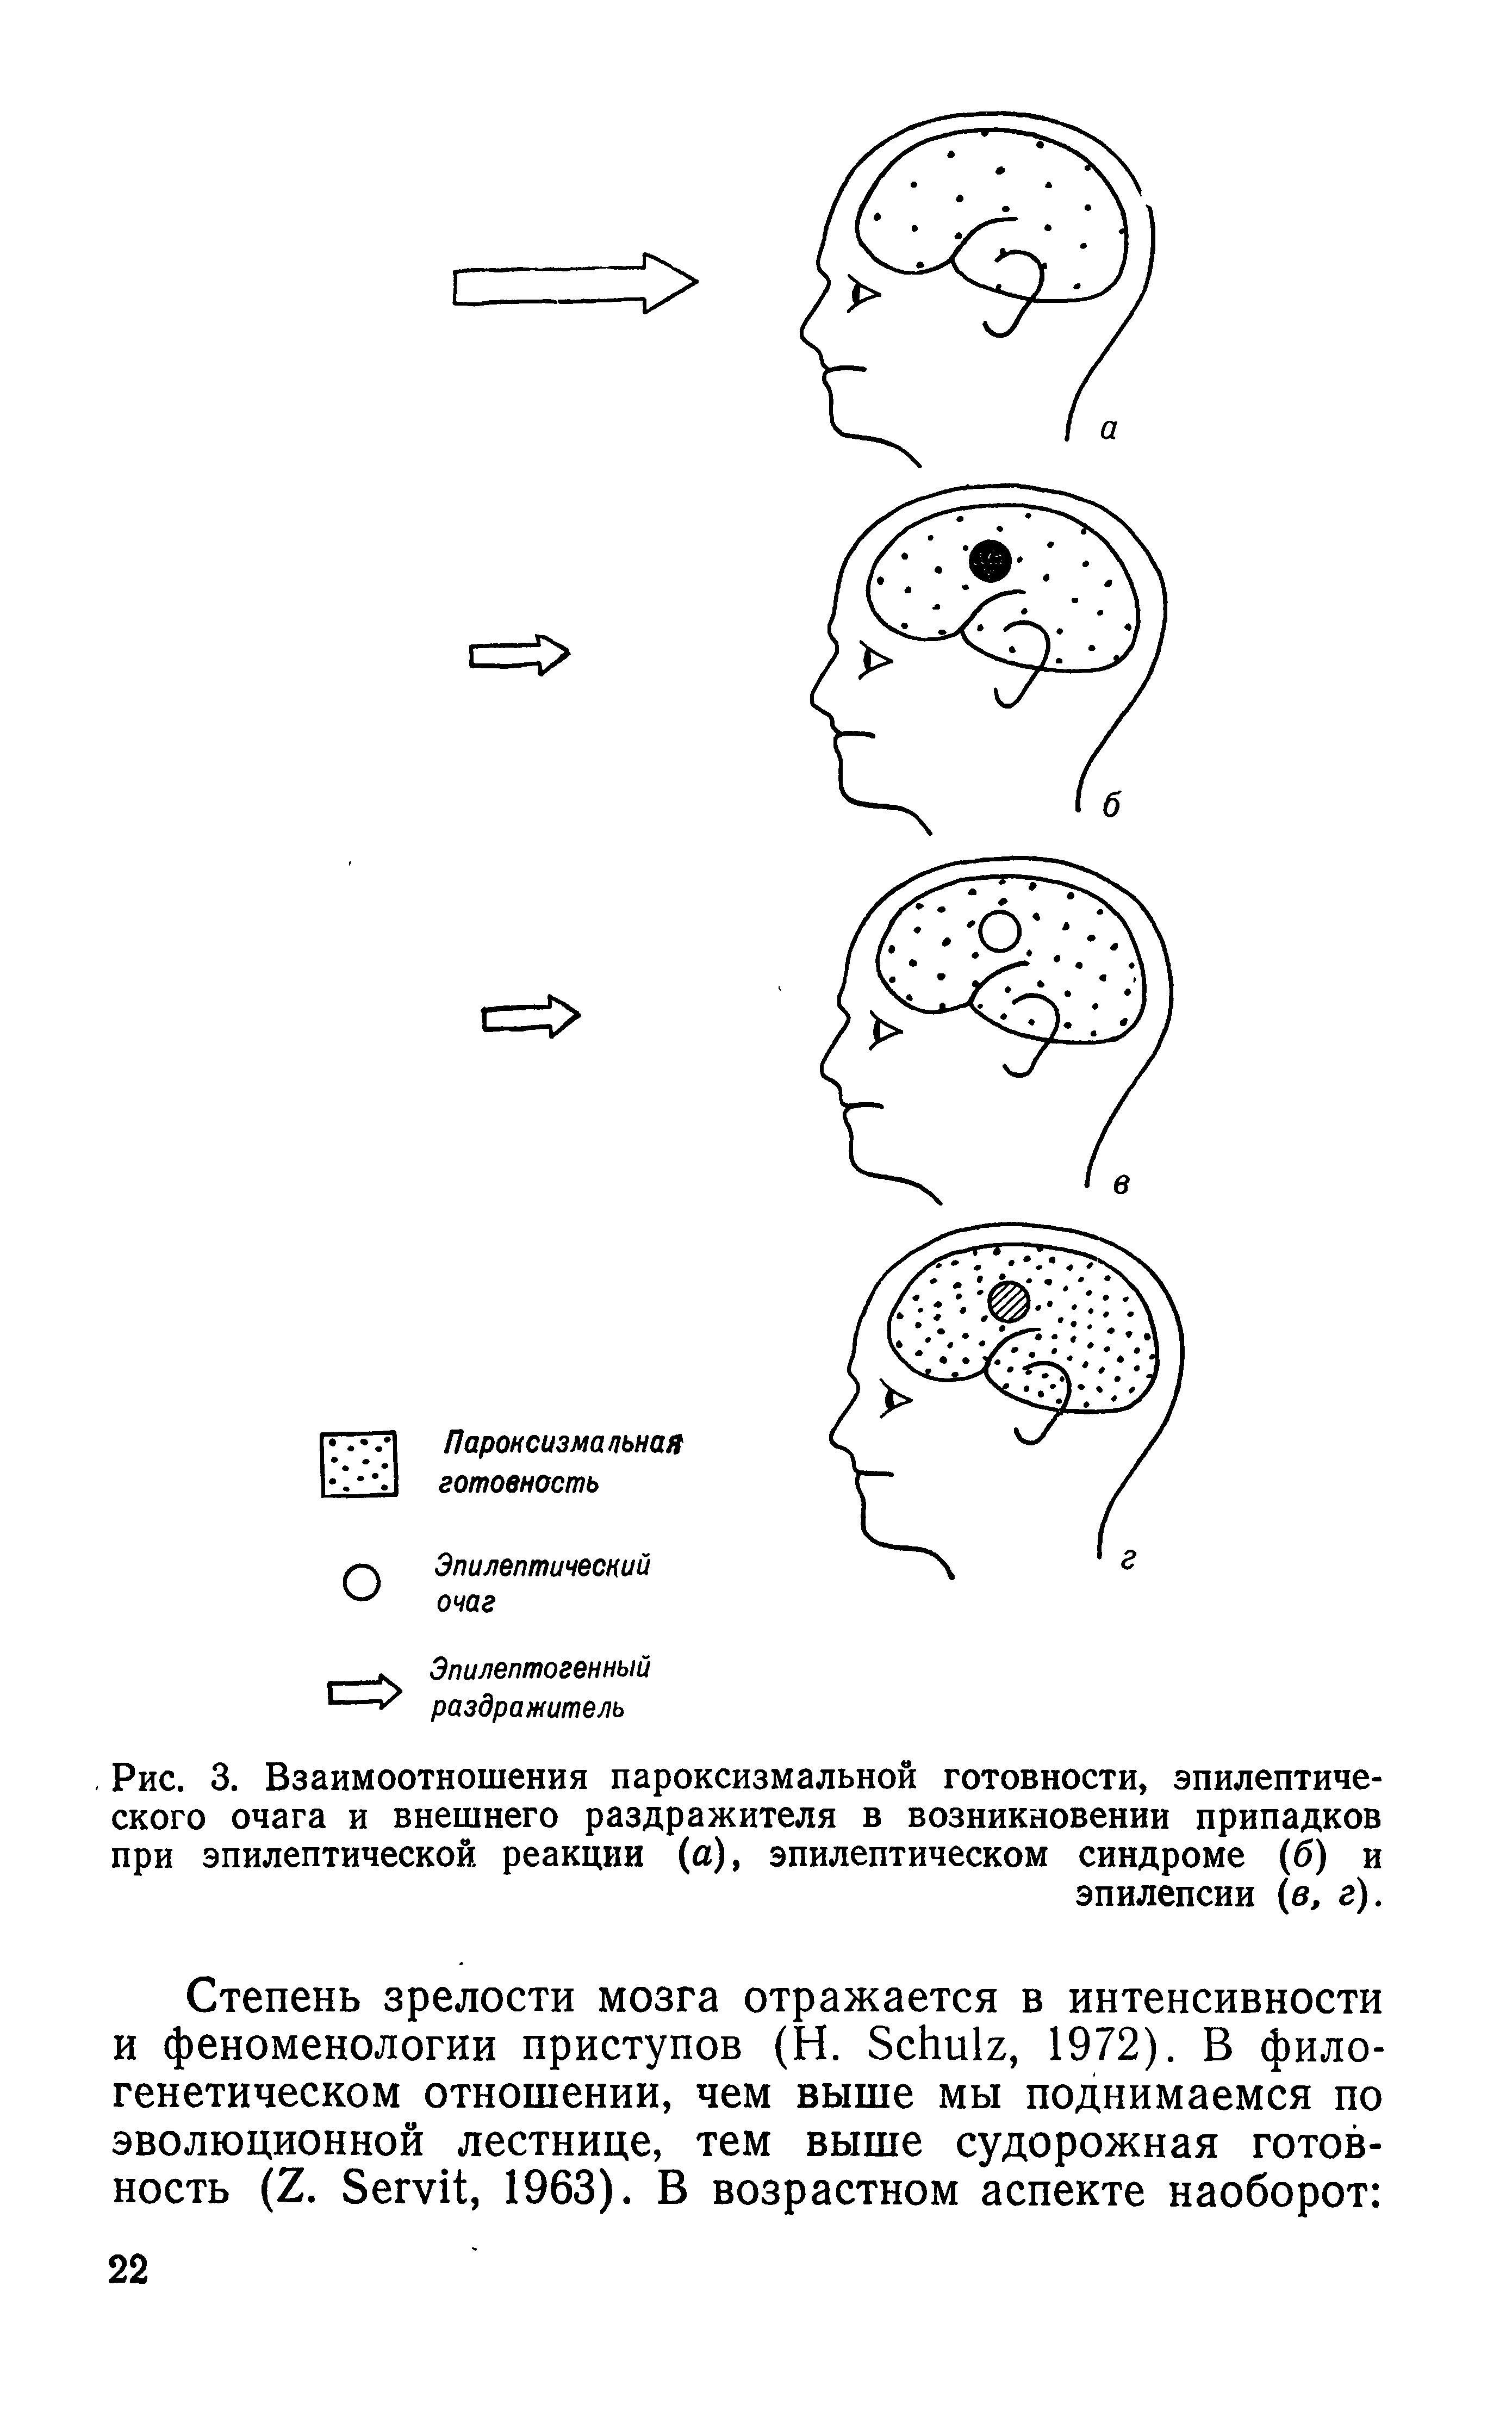 Рис. 3. Взаимоотношения пароксизмальной готовности, эпилептического очага и внешнего раздражителя в возникновении припадков при эпилептической реакции (а), эпилептическом синдроме (б) и эпилепсии (в, г).